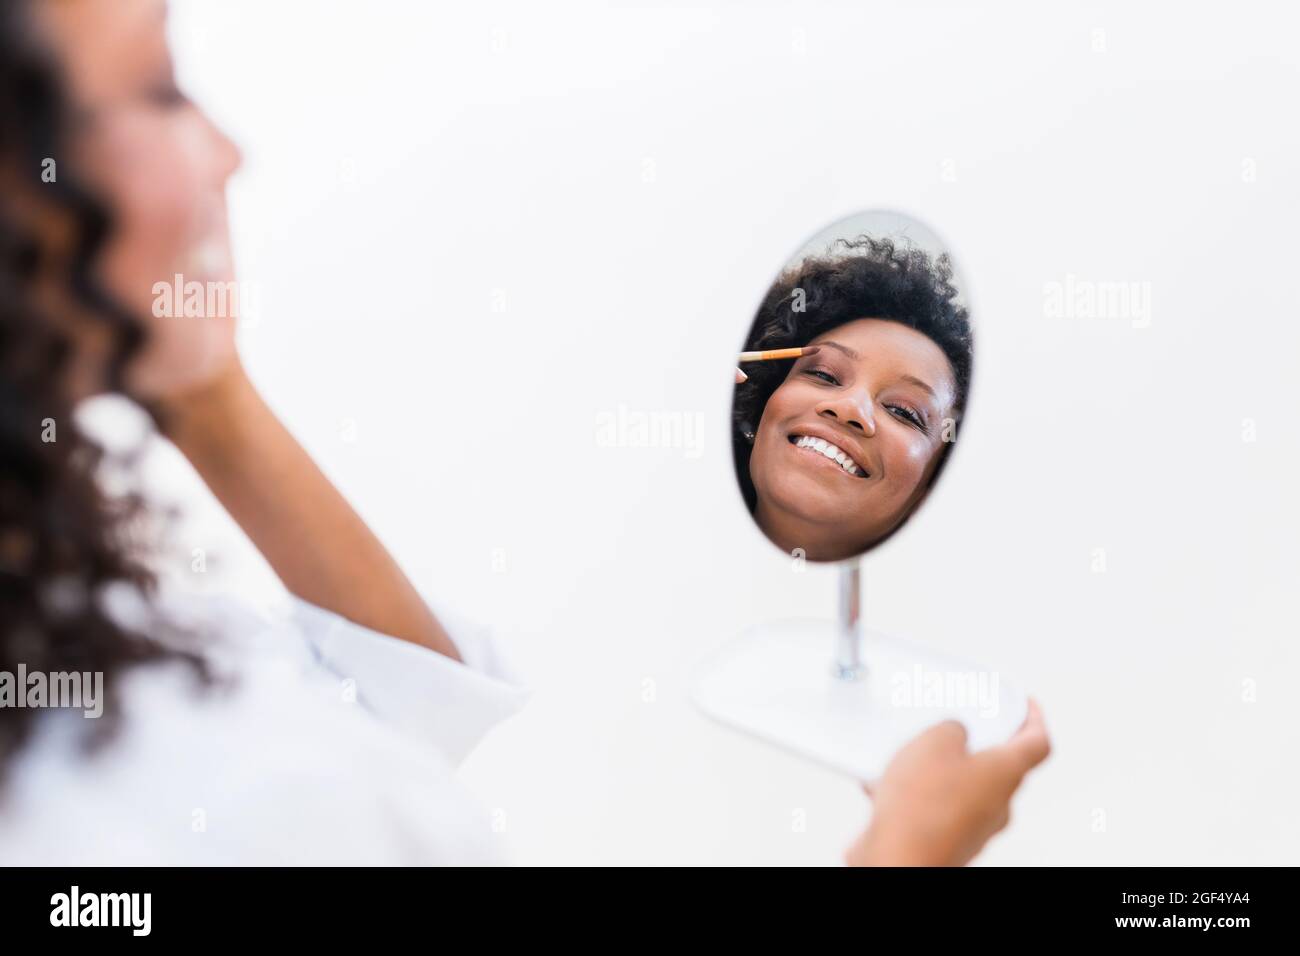 Frau, die Lidschatten anwendet, während sie Spiegelreflexion betrachtet Stockfoto